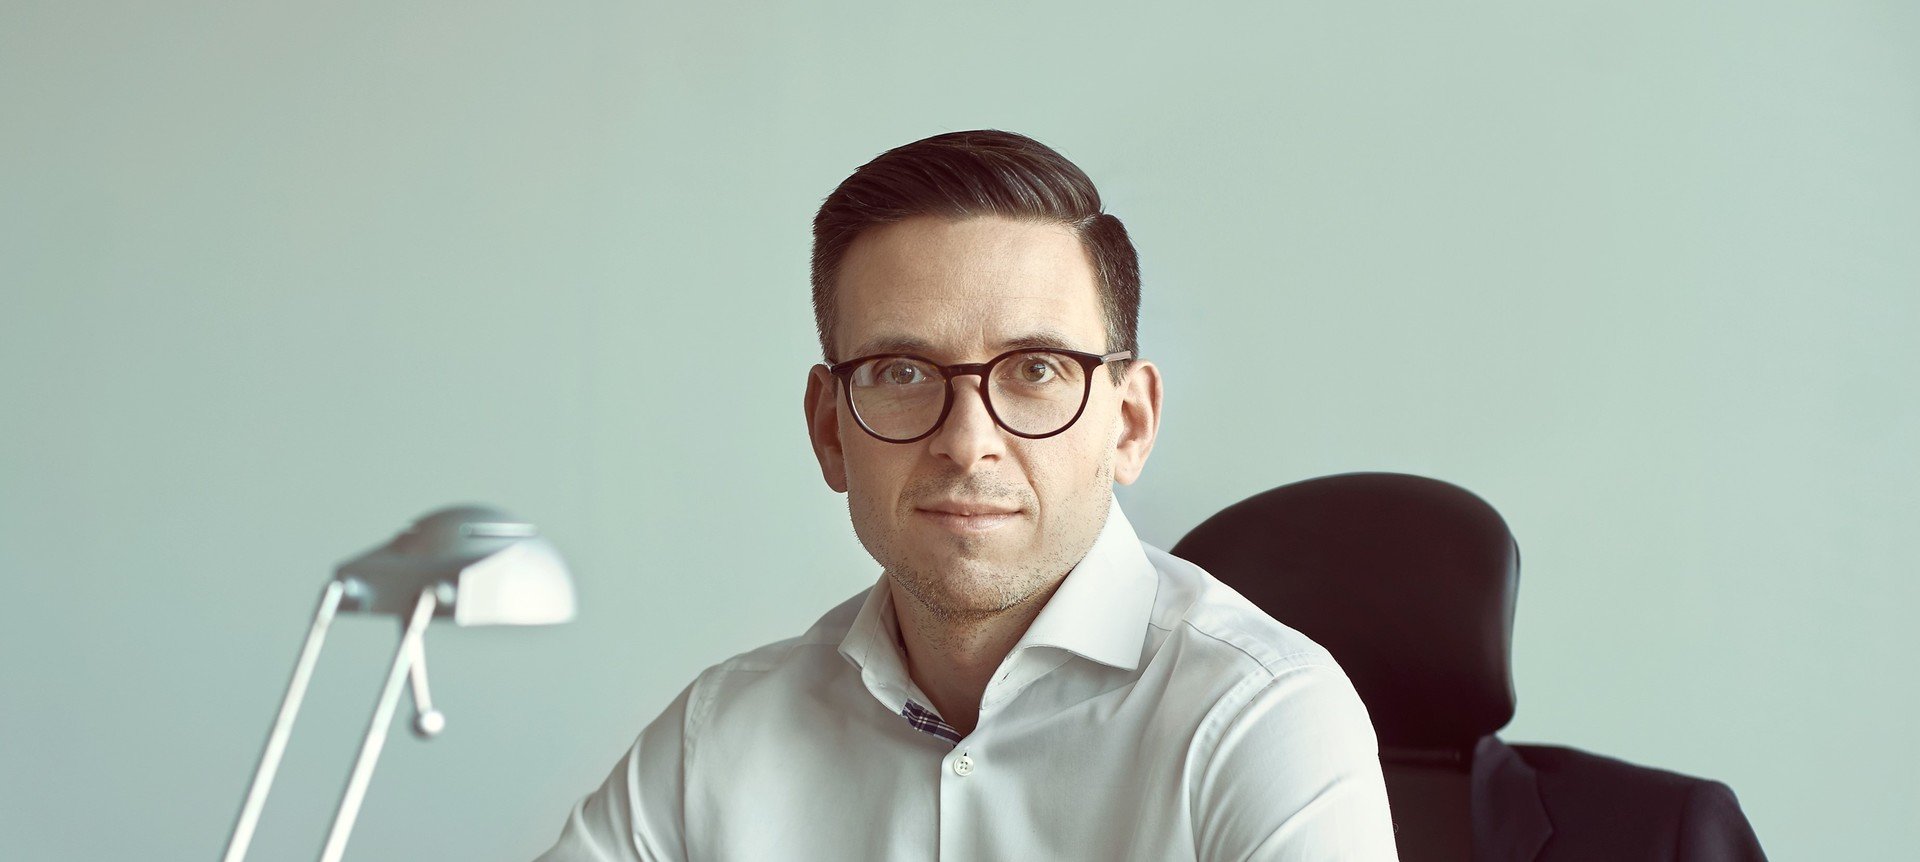 Łukasz Marciniak, ekspert Pracuj.pl, Dyrektor Rozwoju Sprzedaży w Grupie Pracuj